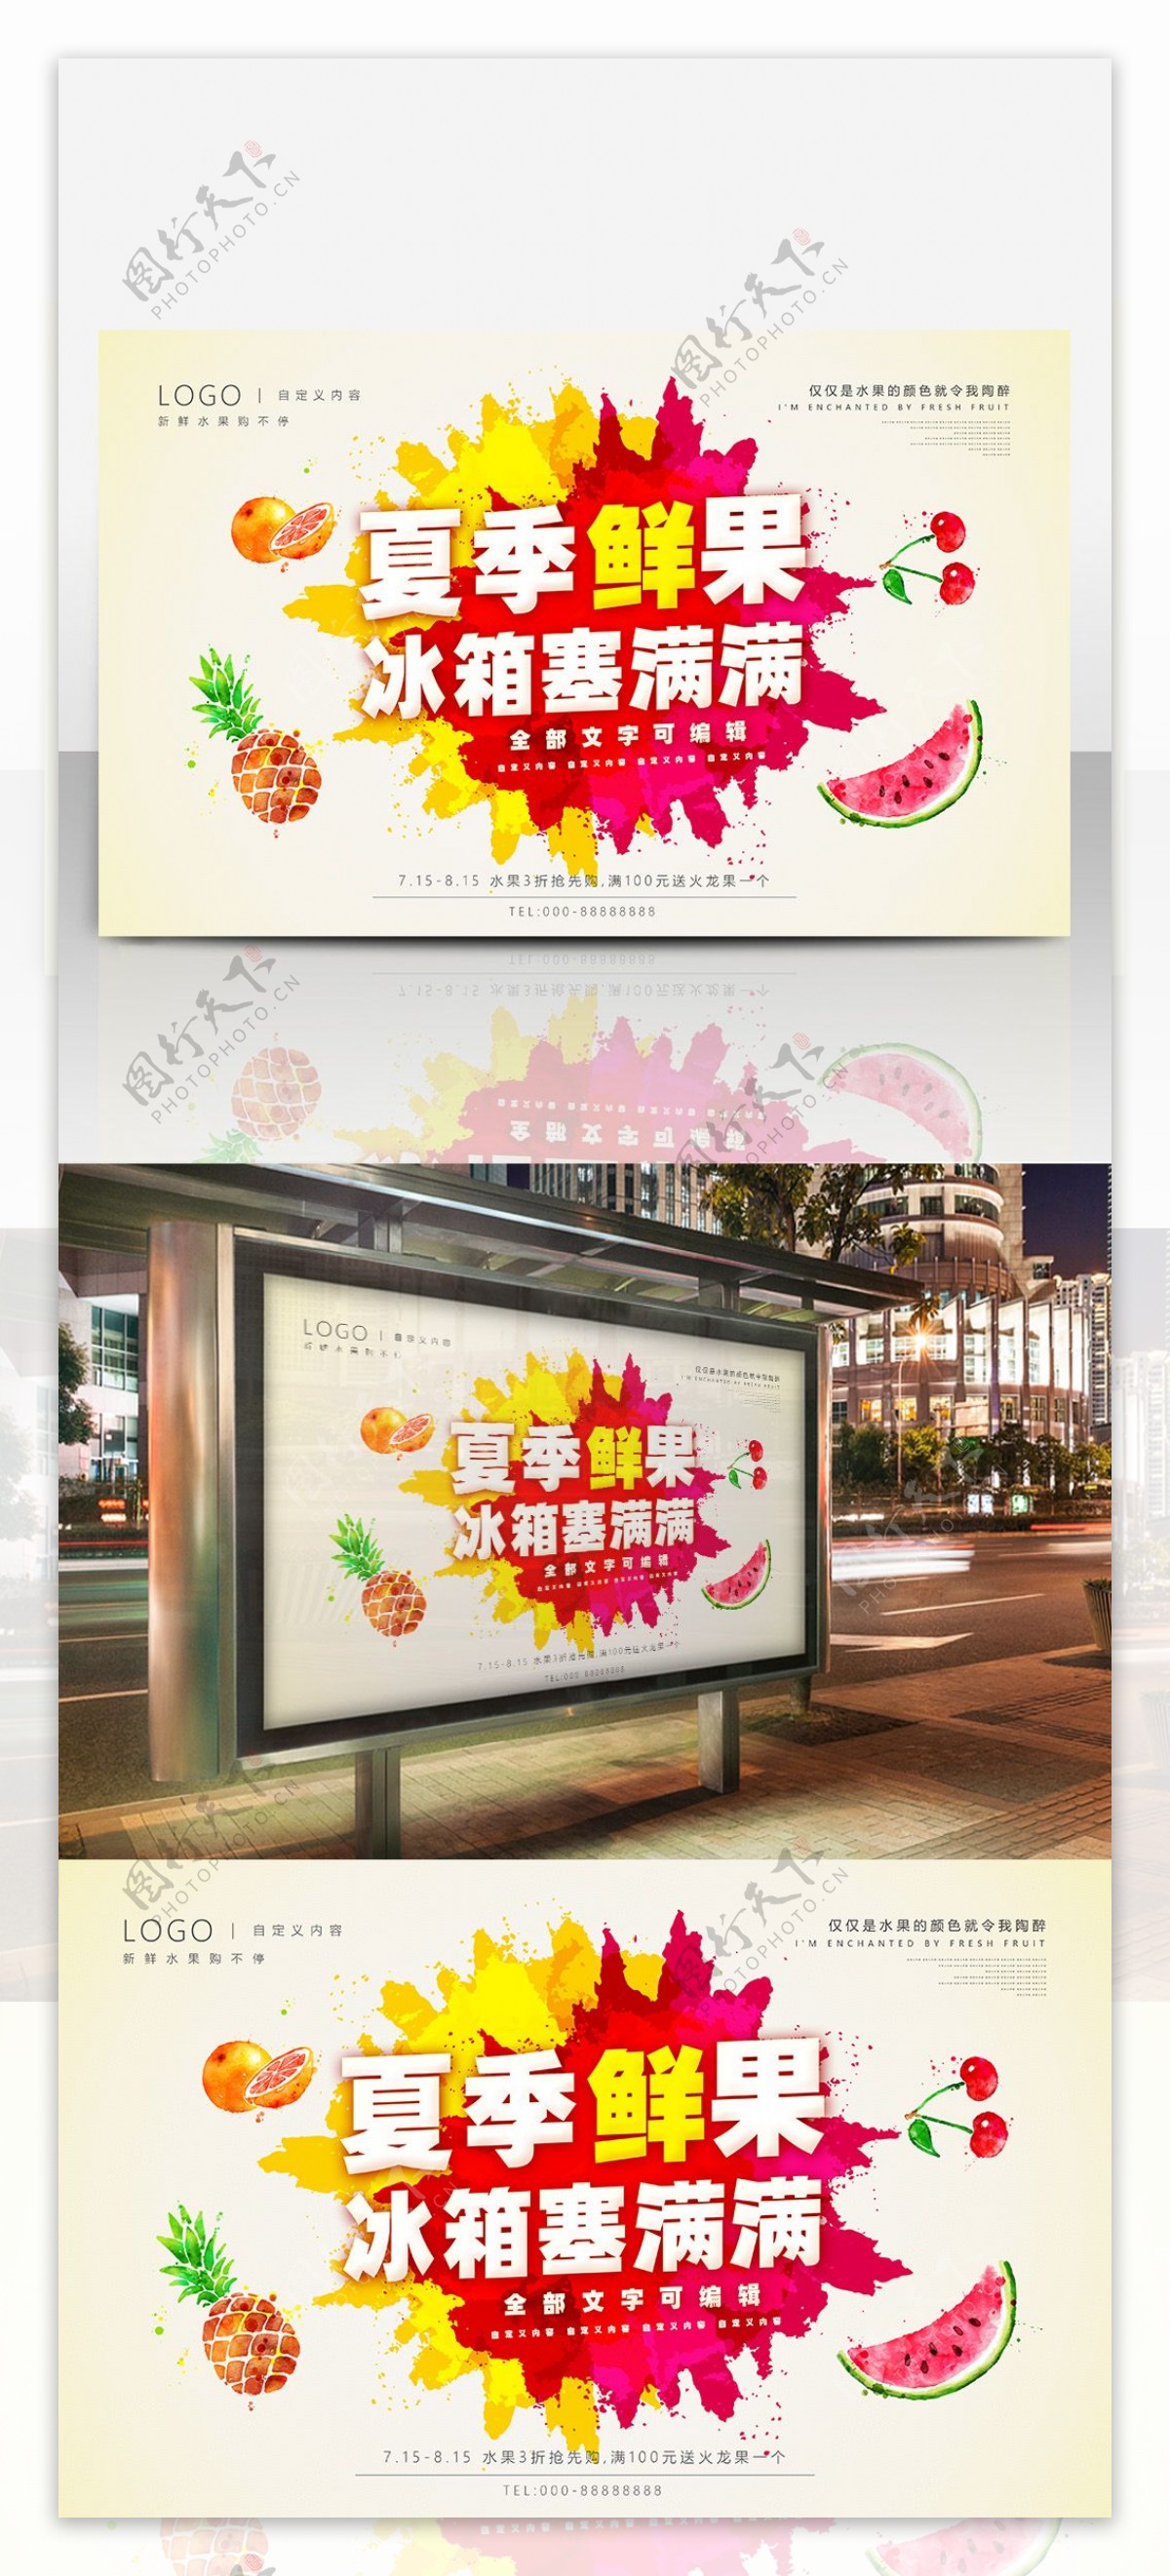 清新泼墨风格夏季水果促销海报